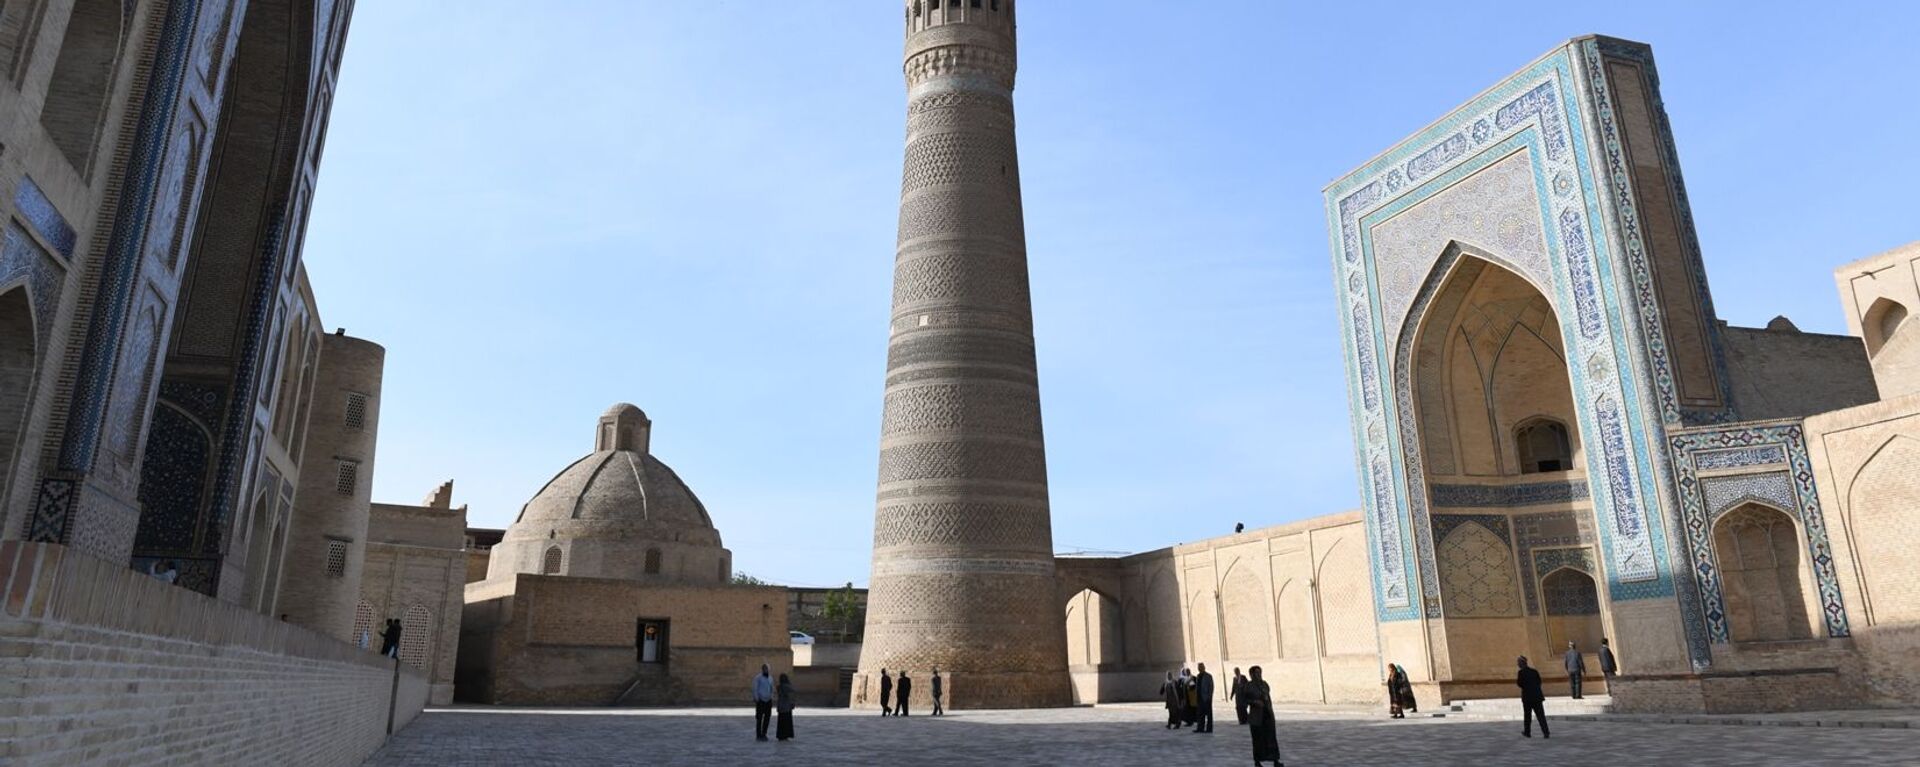 Минарет и мечеть Калян, медресе Мири-Араб (Бухара) - Sputnik Узбекистан, 1920, 05.09.2019